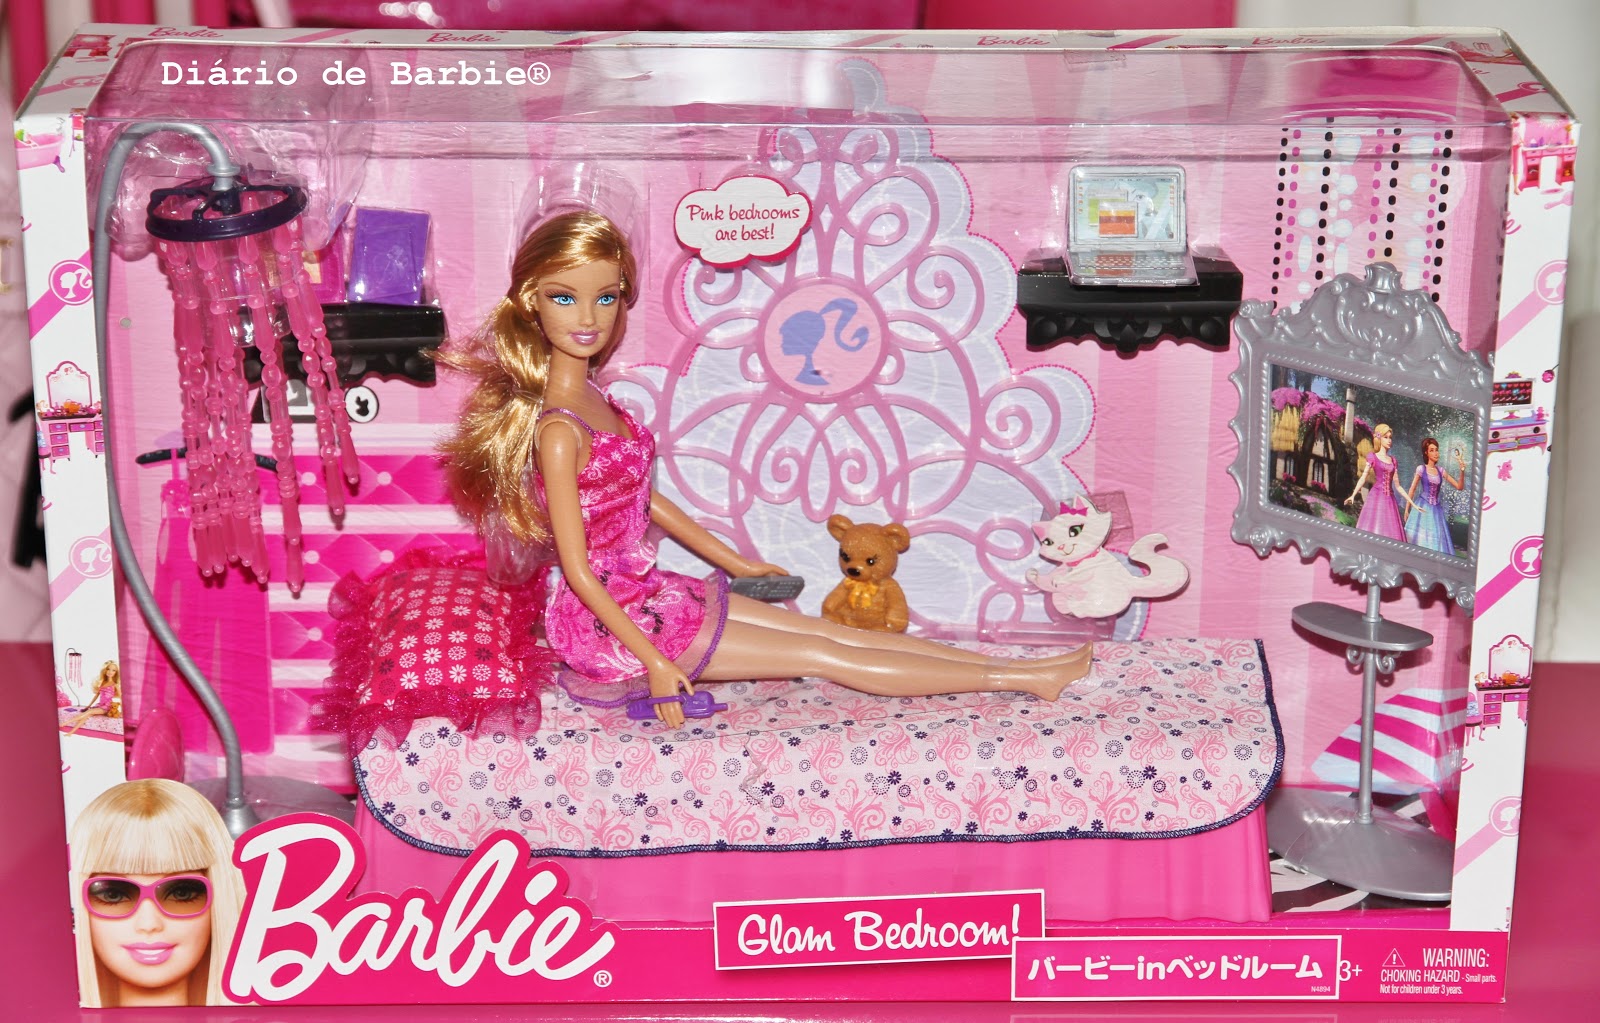 DiÃ¡rio de Barbie by: Lanna Pink: â¥ Barbie Glam Set